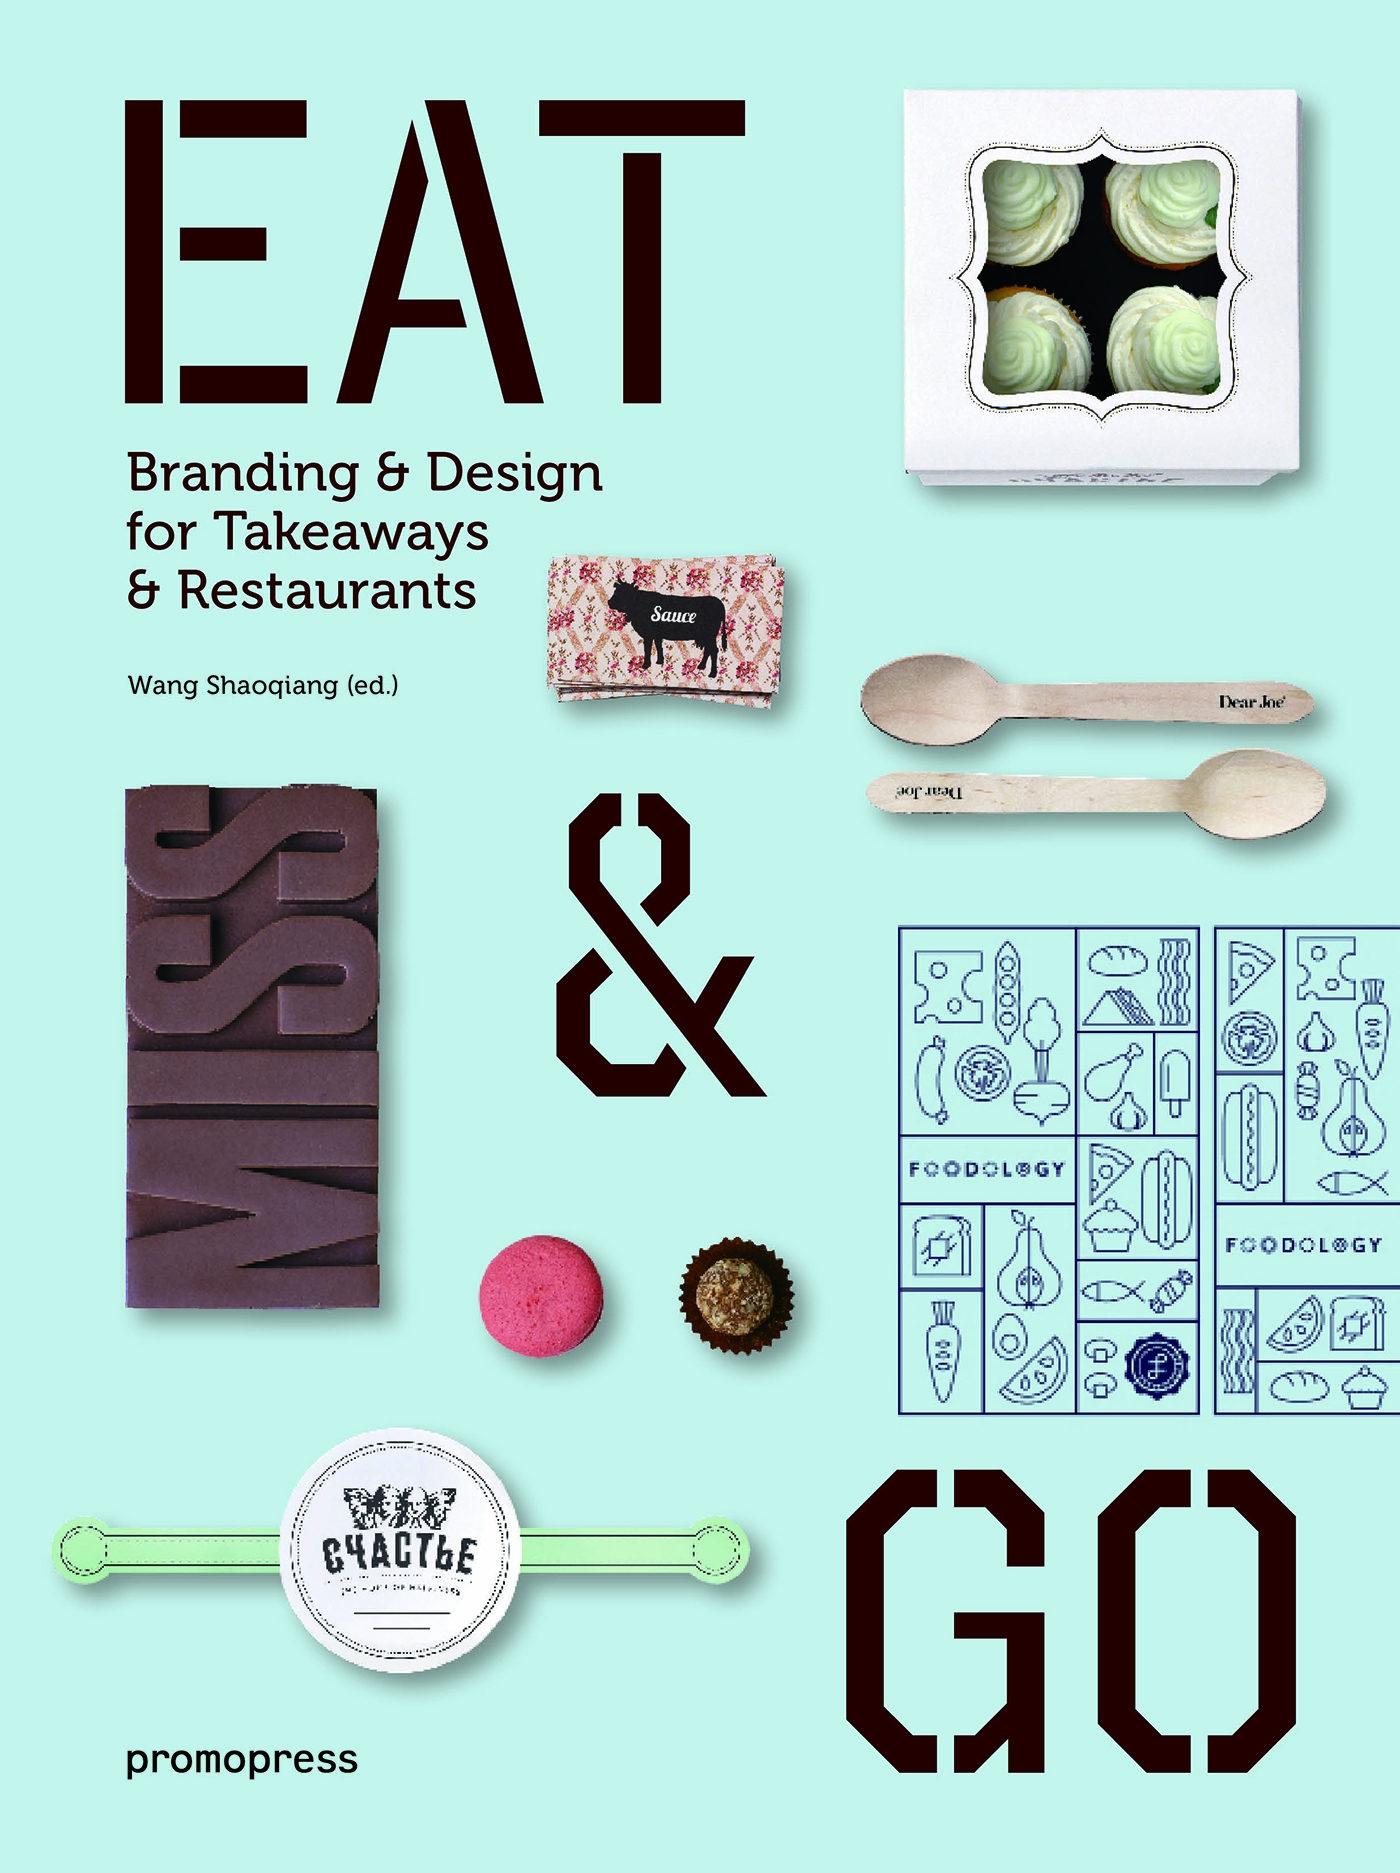 Eat & Go "Branding & Design for Takeaways & Restaurants"